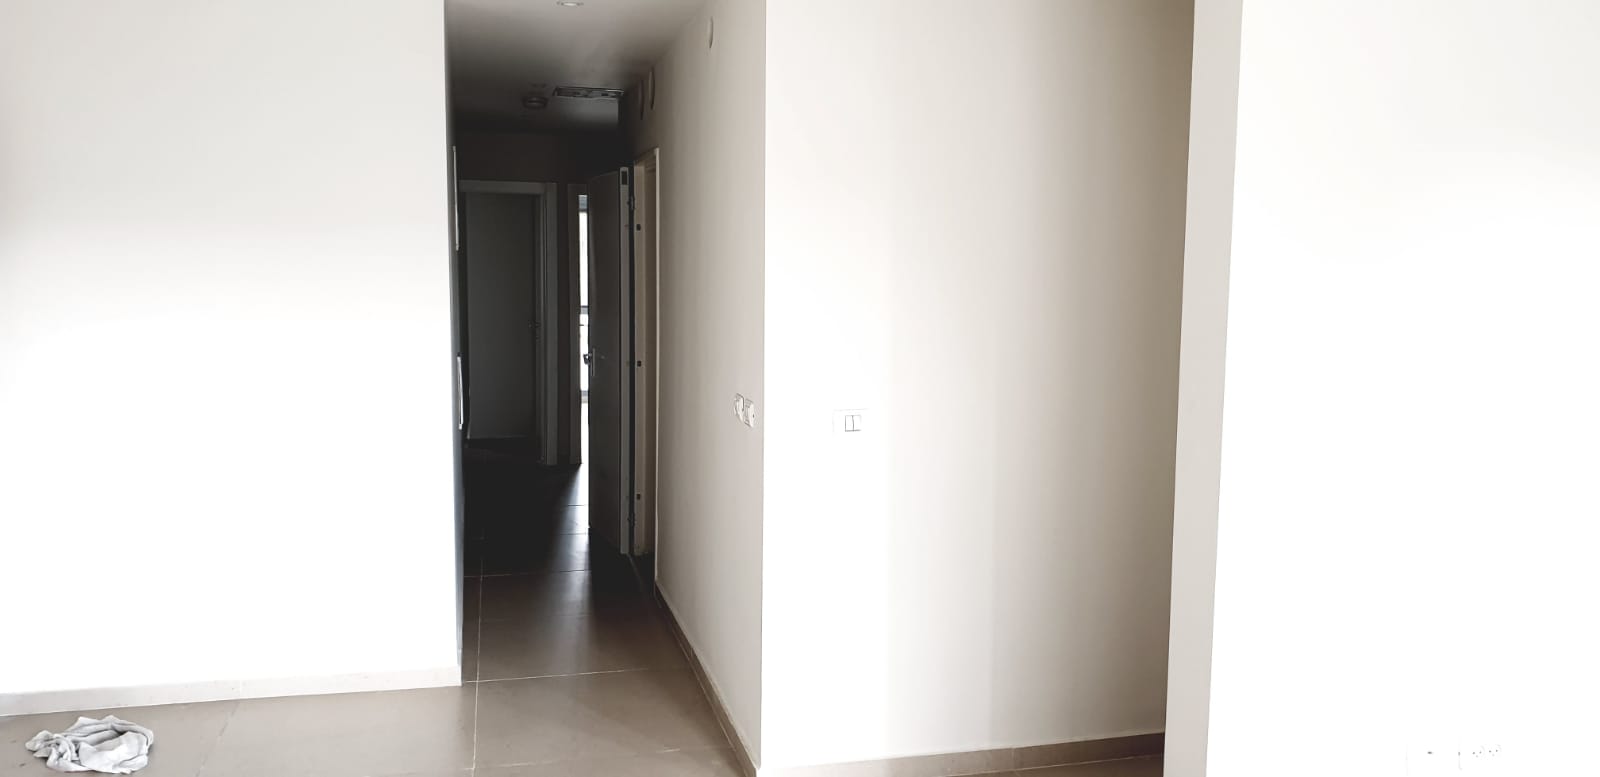 فيديو: بيت 3 غرف وصالون بمساحة 128 متراً للبيع في حي العجمي بيافا